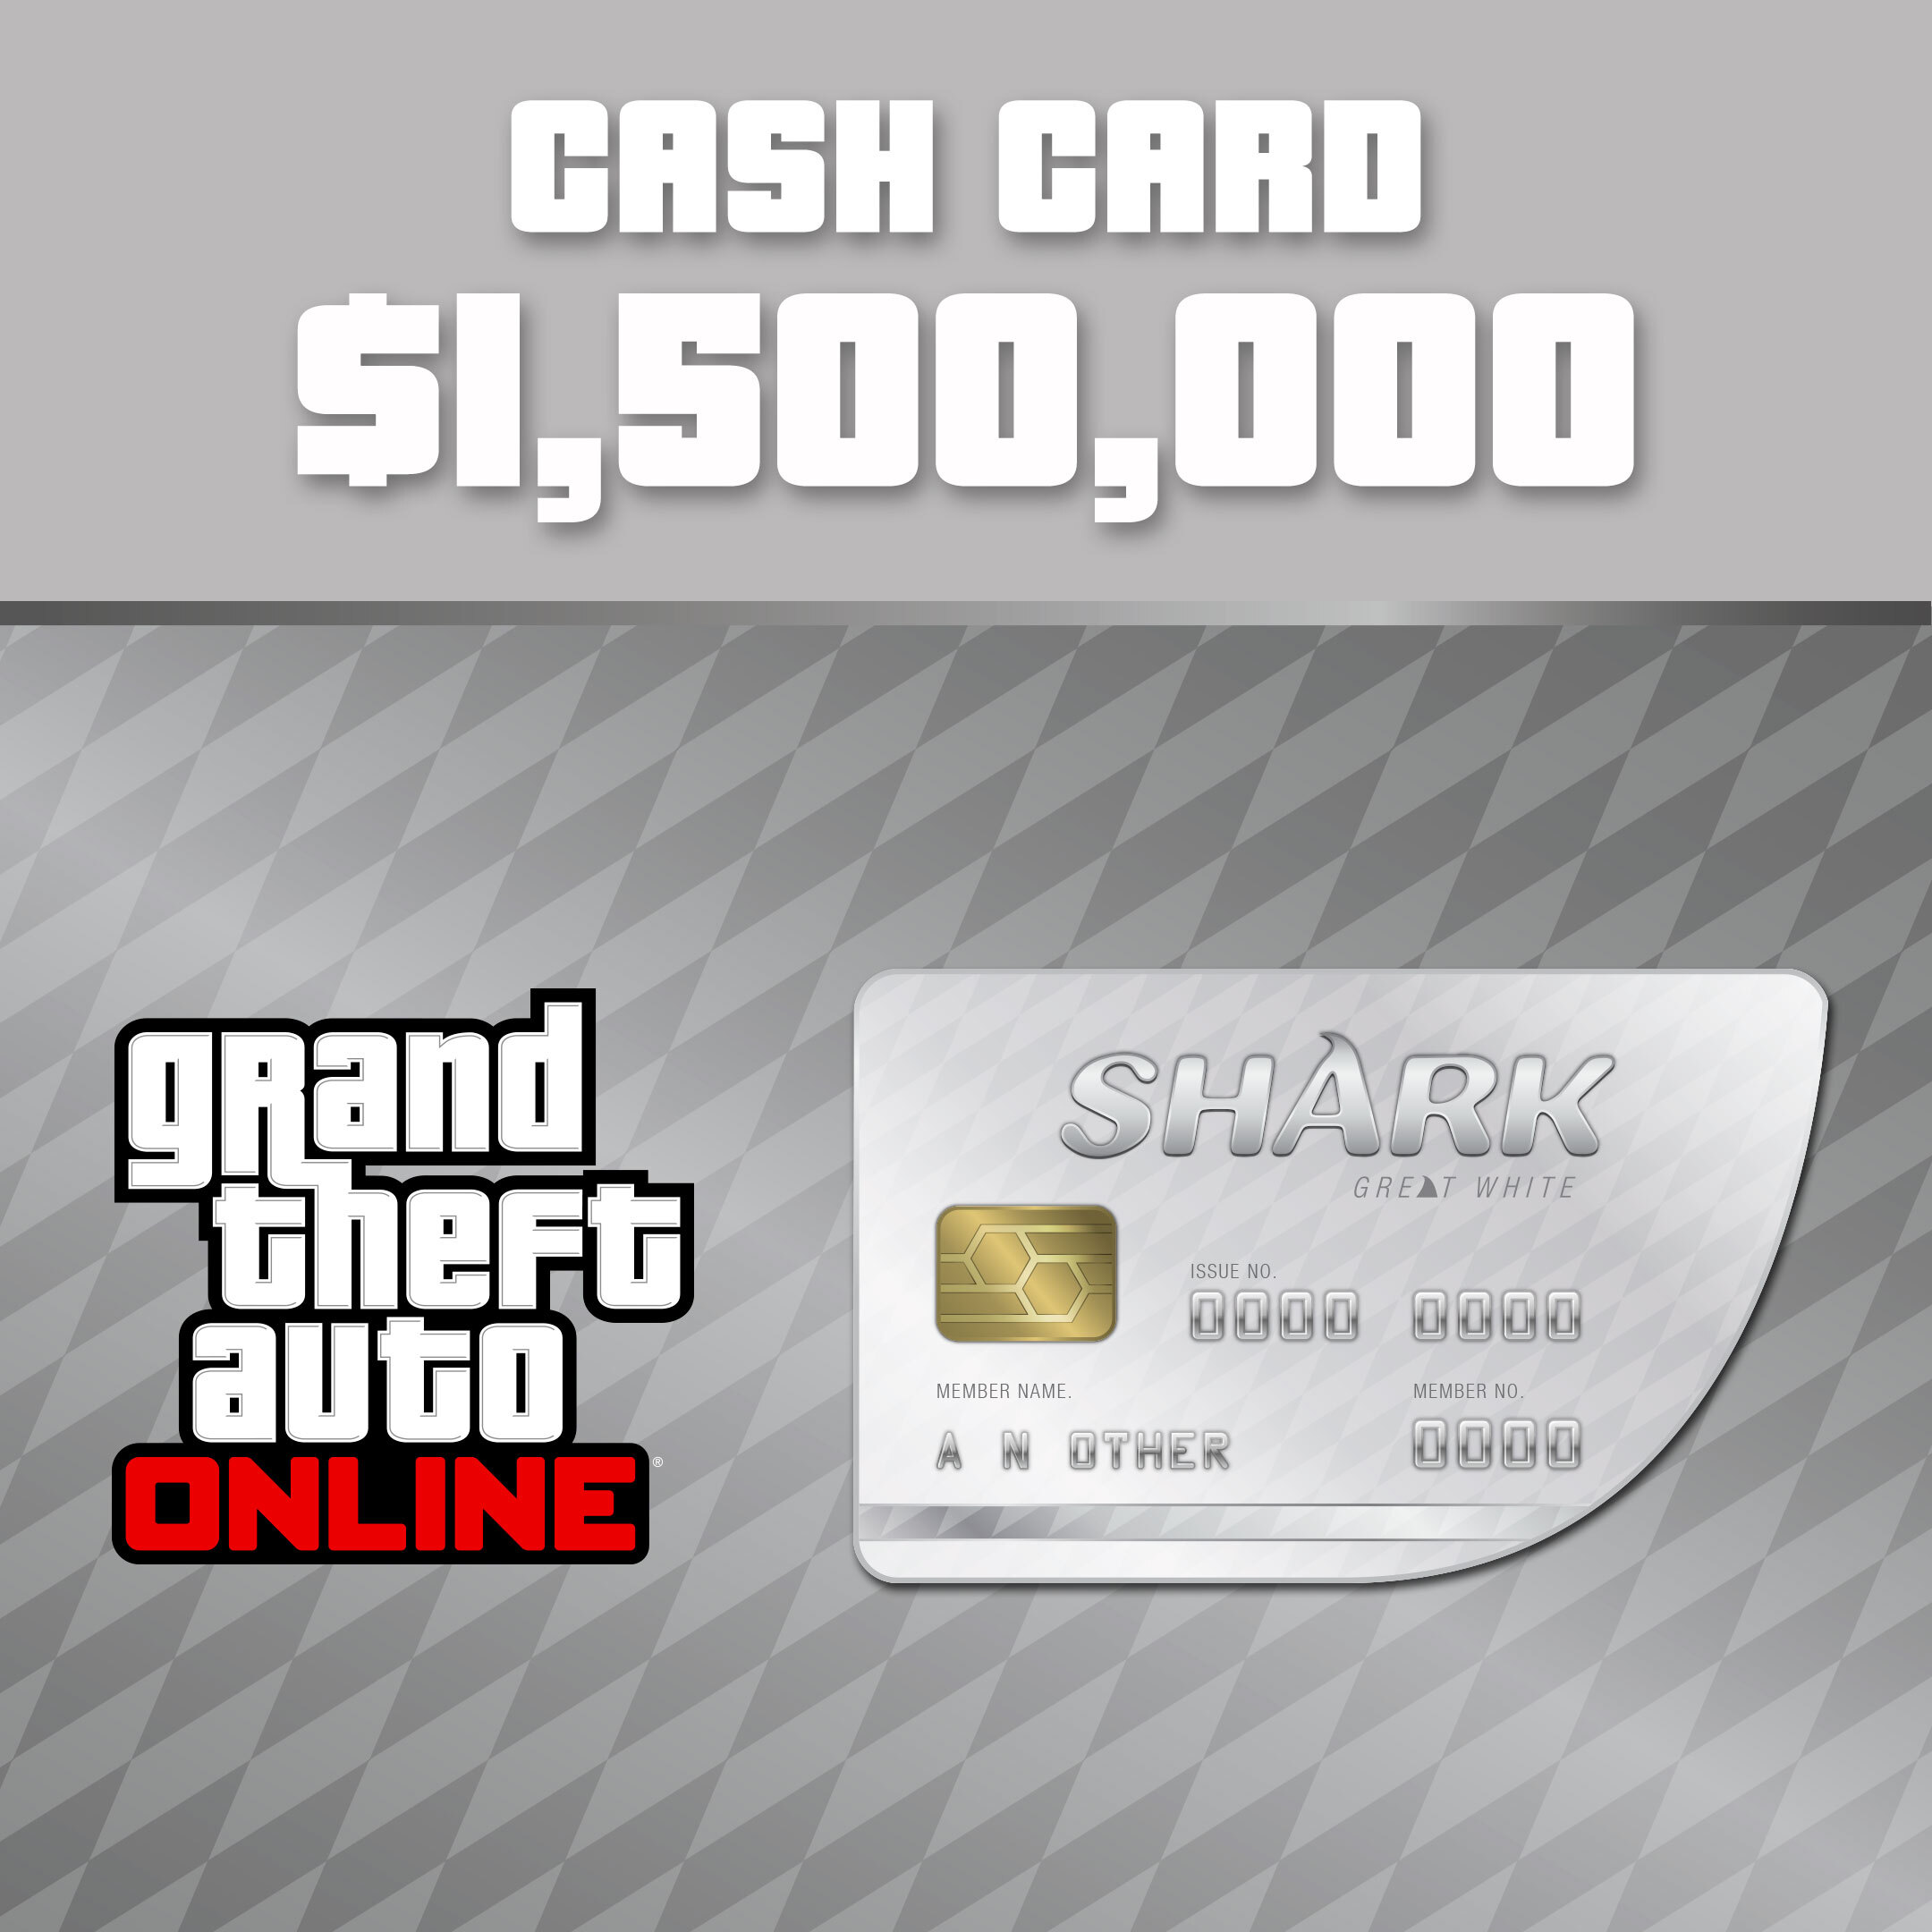 Grand Theft Auto Online: Pacotes de Dinheiro Tubarão